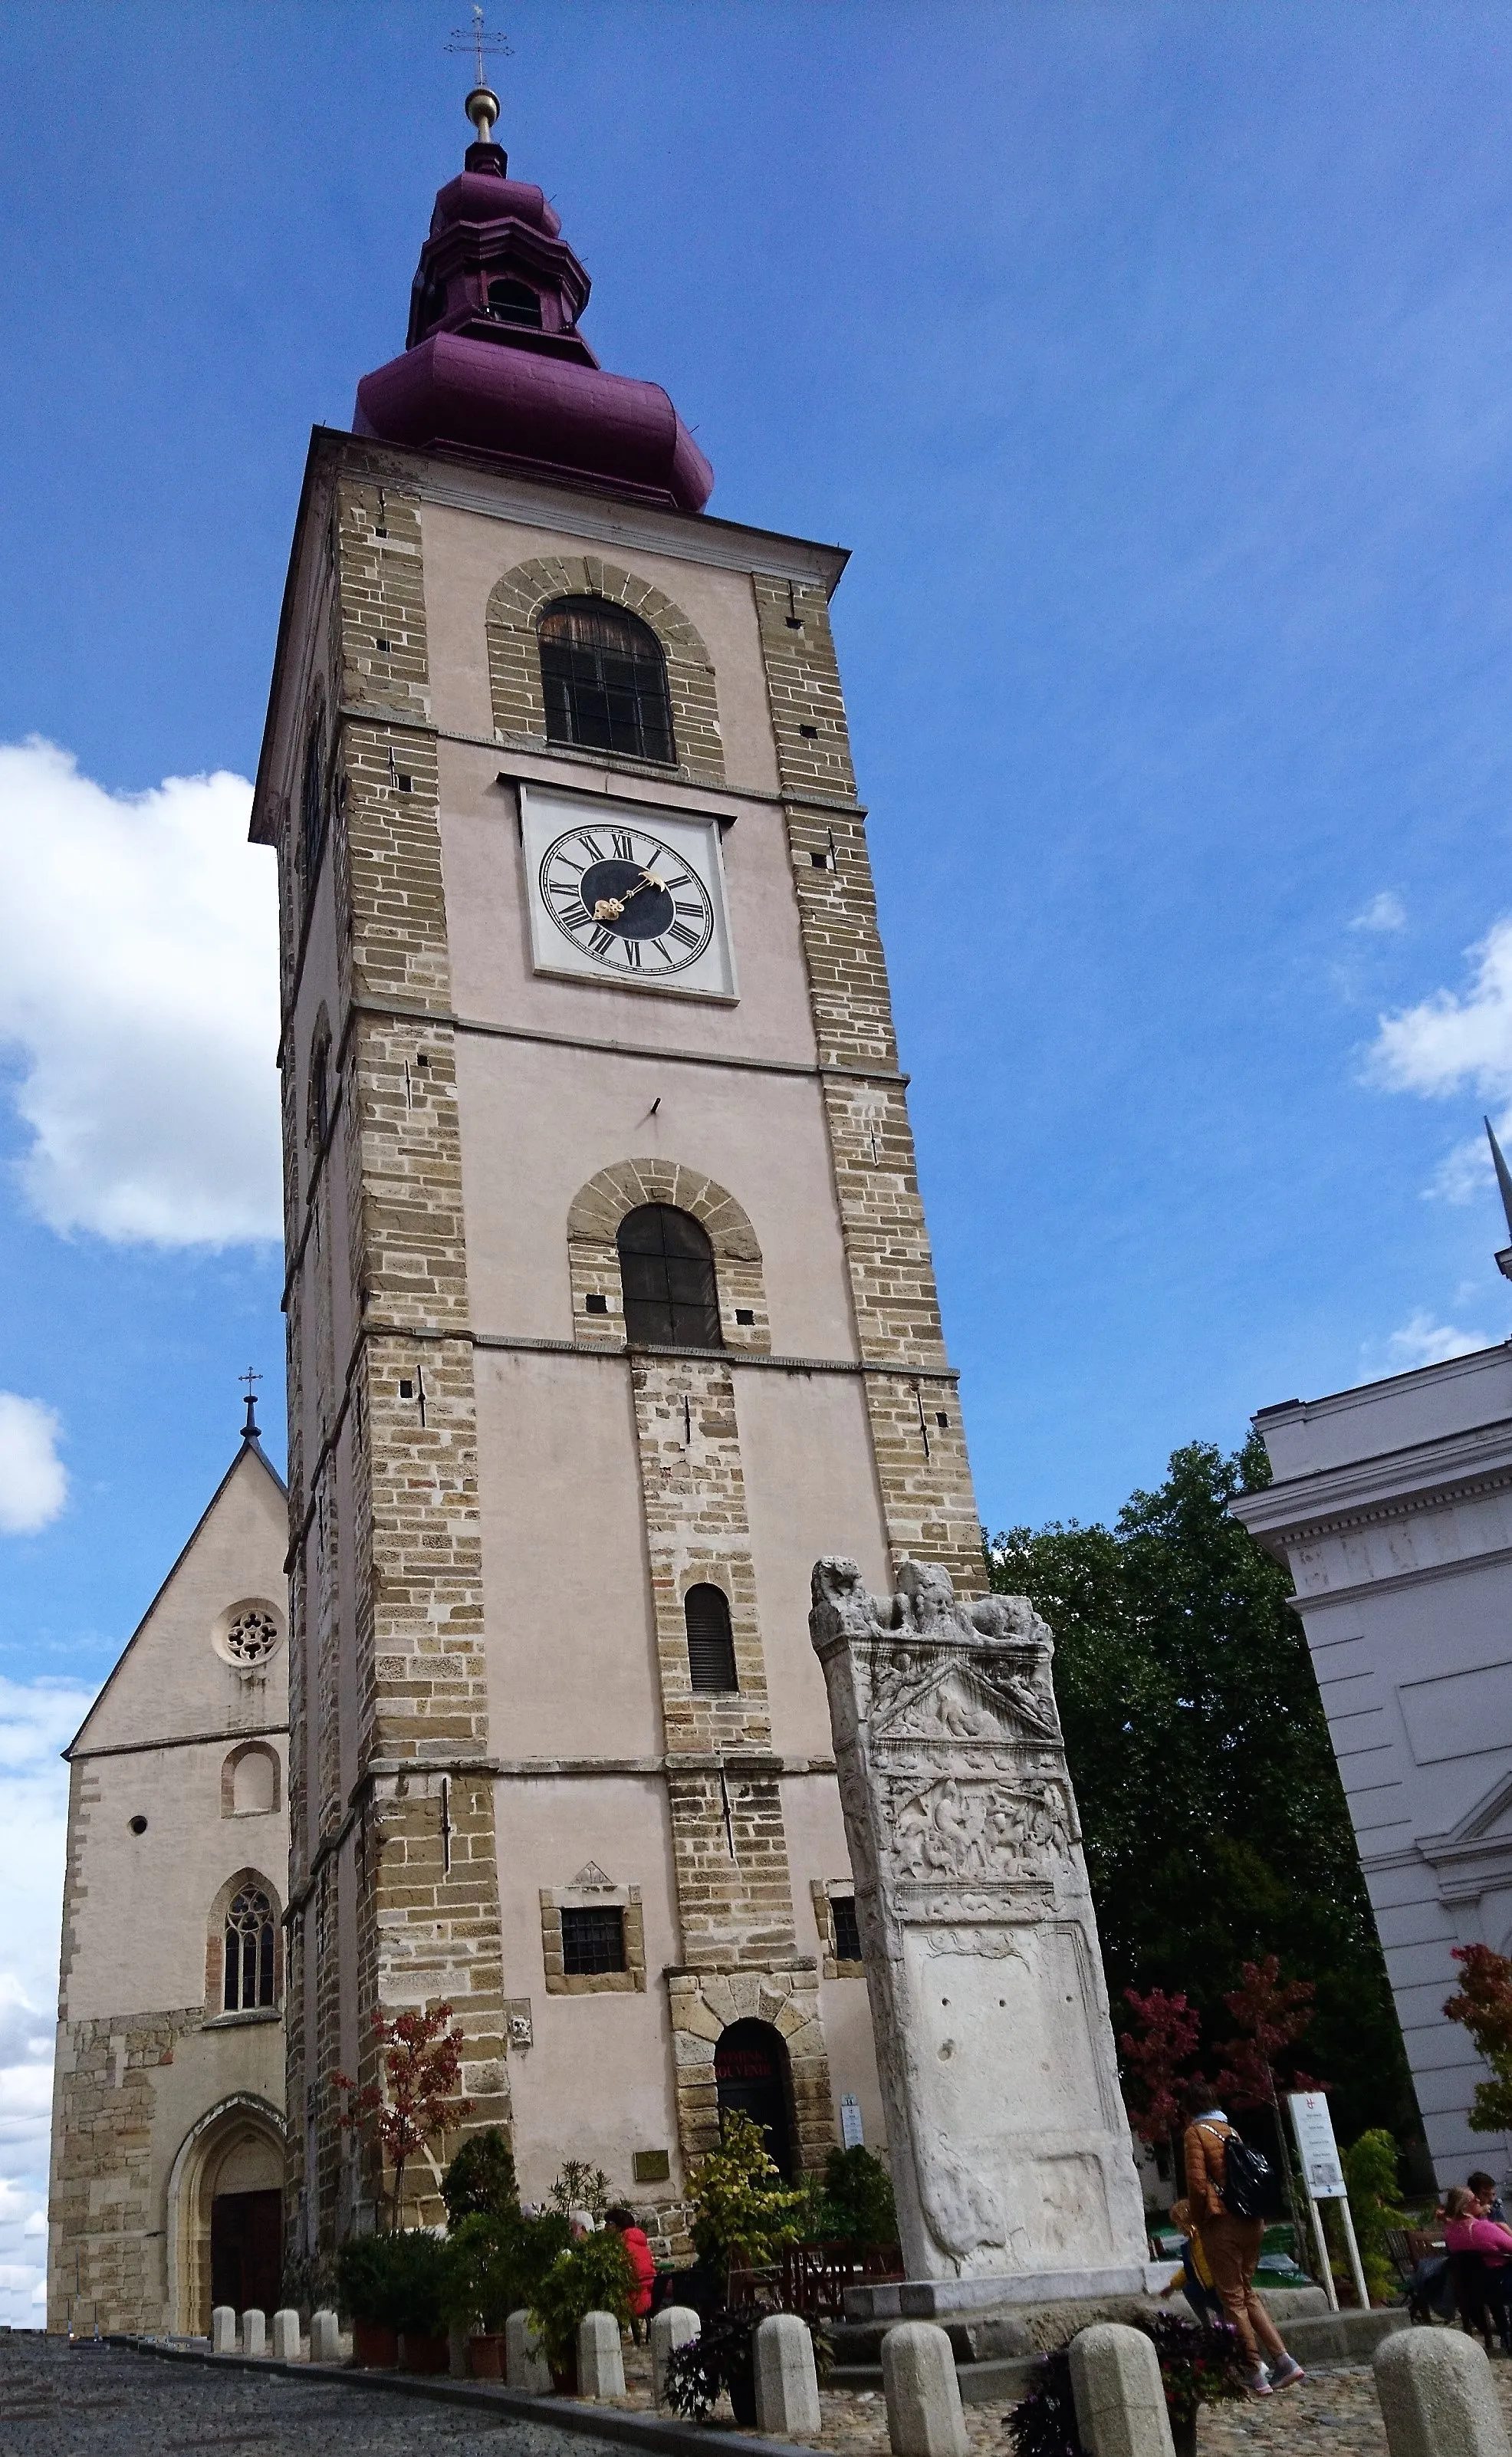 Image de Vzhodna Slovenija